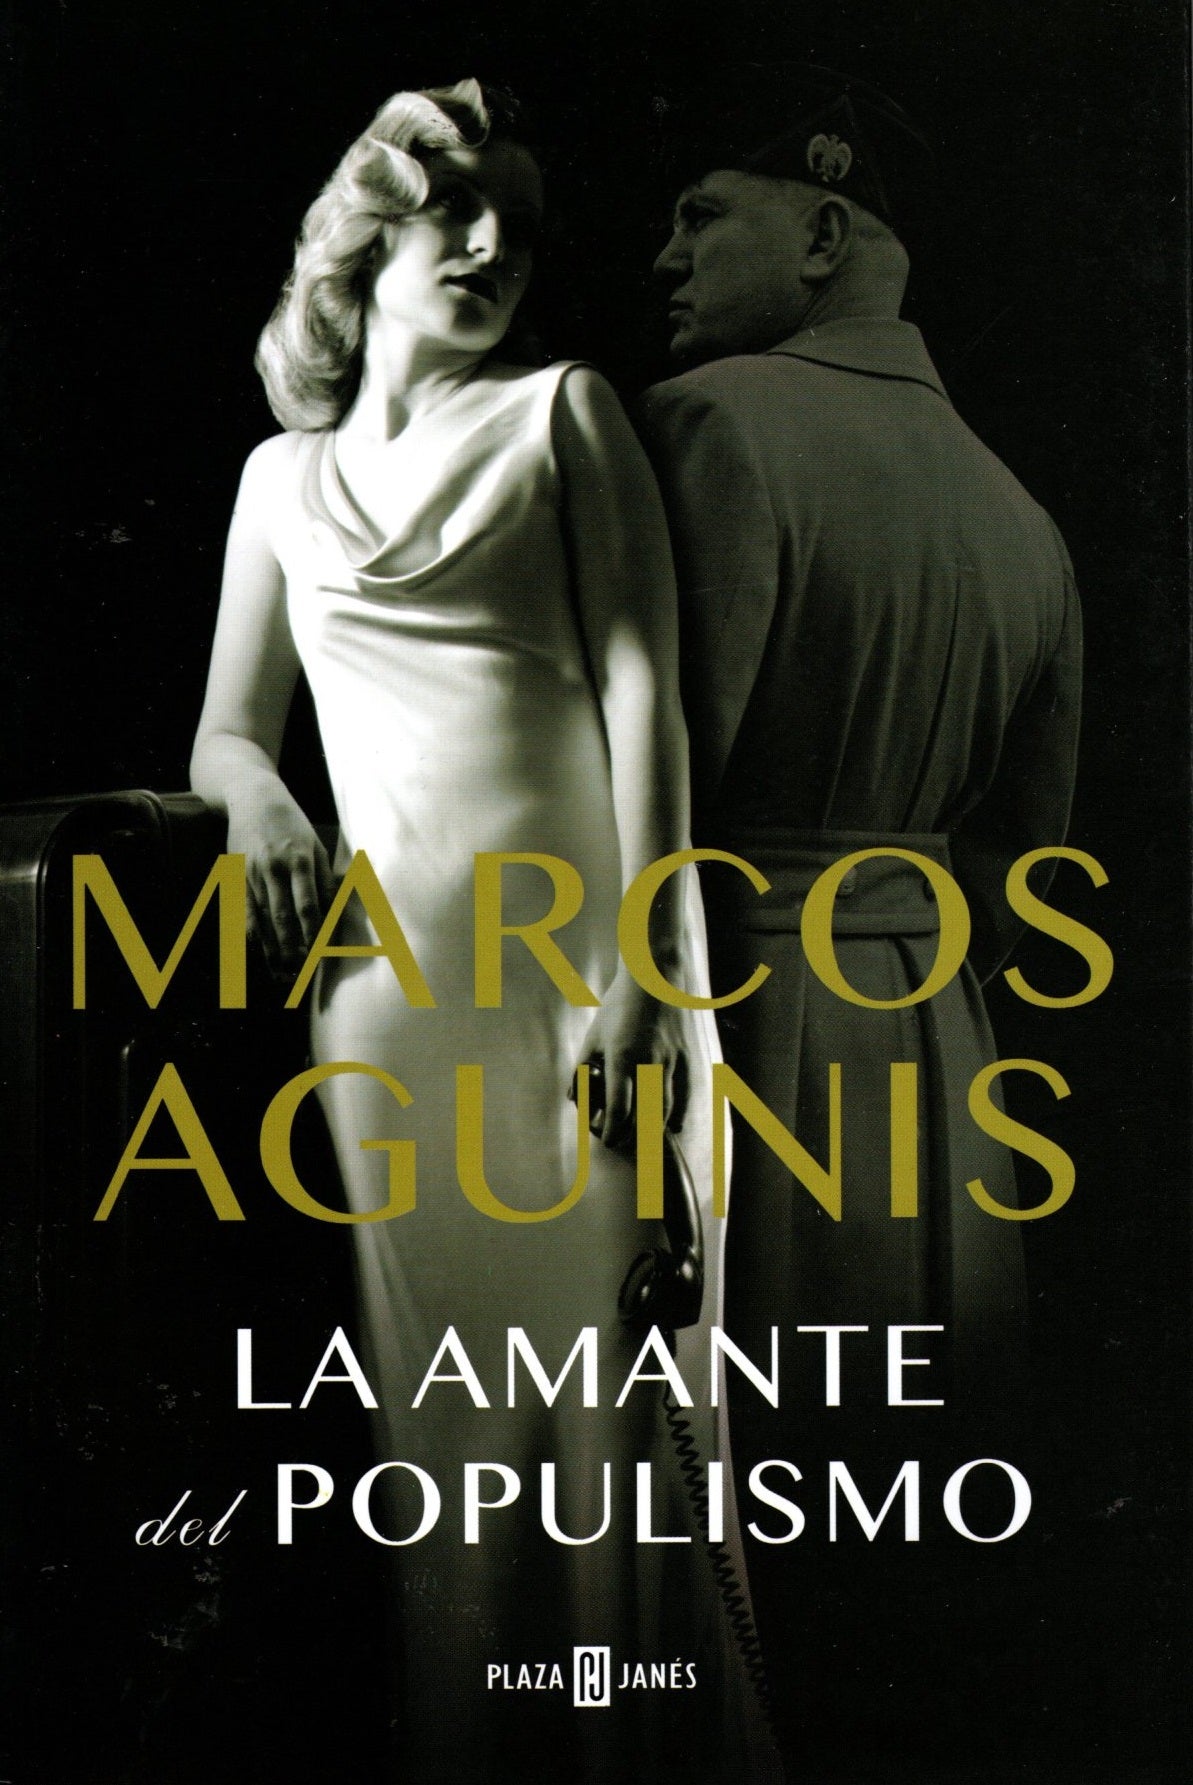 Libro Marcos Aguinis - La amante del populismo